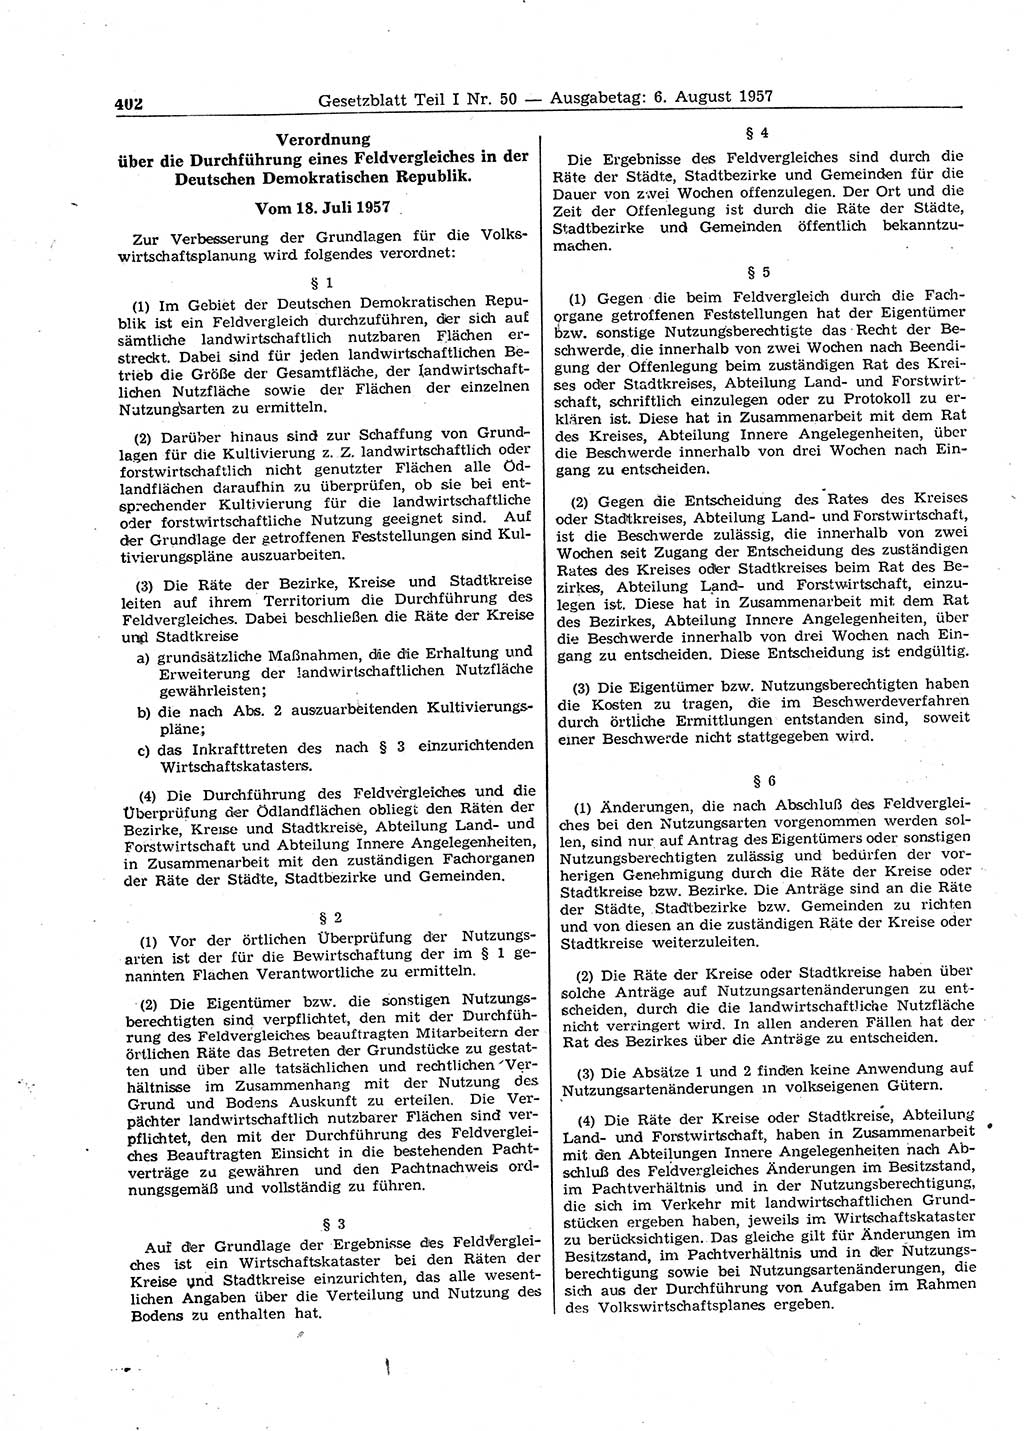 Gesetzblatt (GBl.) der Deutschen Demokratischen Republik (DDR) Teil Ⅰ 1957, Seite 402 (GBl. DDR Ⅰ 1957, S. 402)